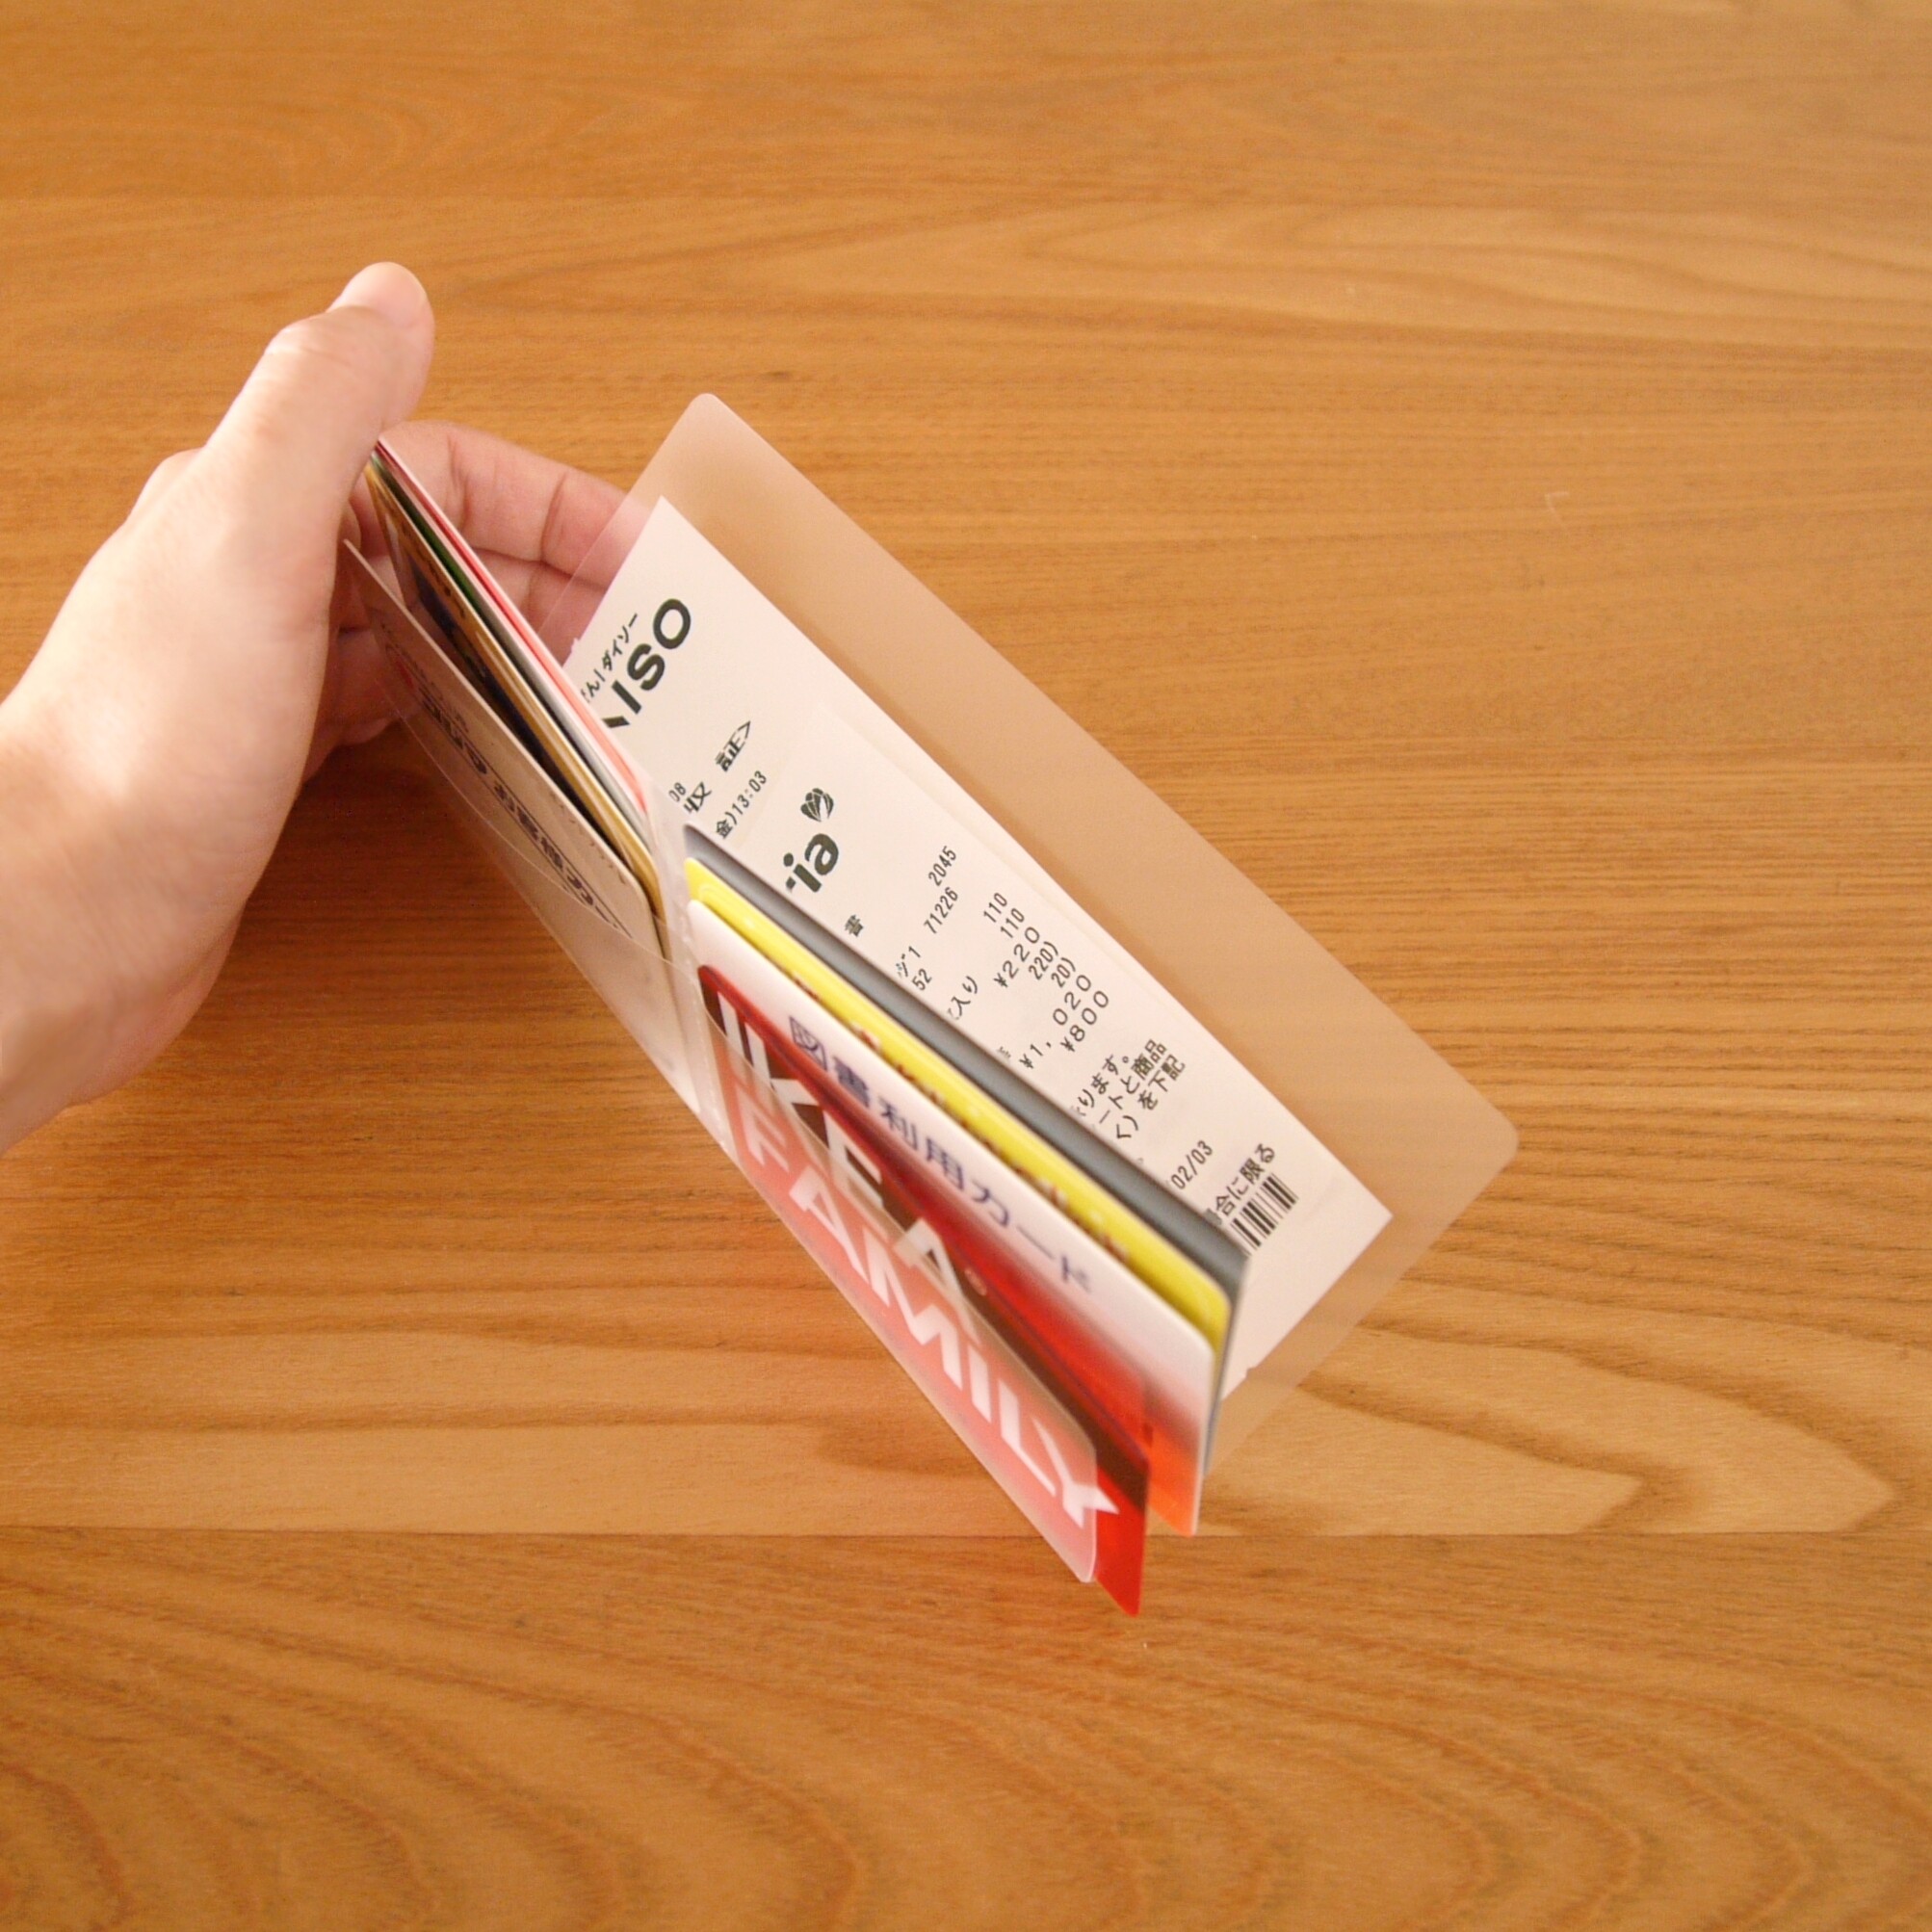 話題の キャンドゥ 長財布に入るカードホルダーに感動 カード収納の救世主 Usagi Works Powered By ライブドアブログ